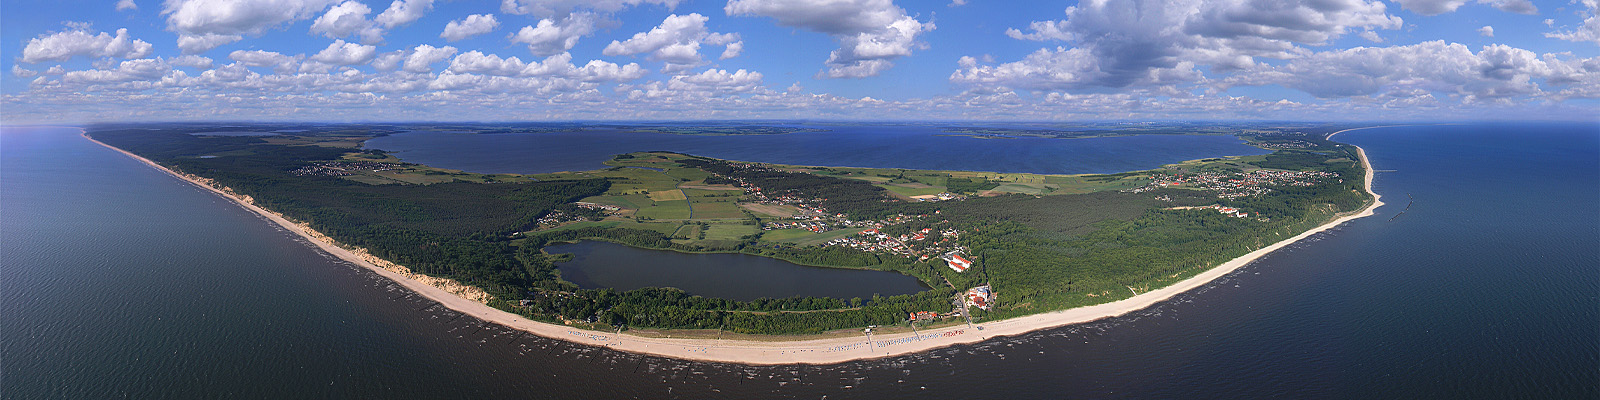 Panorama: Kölpinsee Luftbild - Motivnummer: use-koel-100